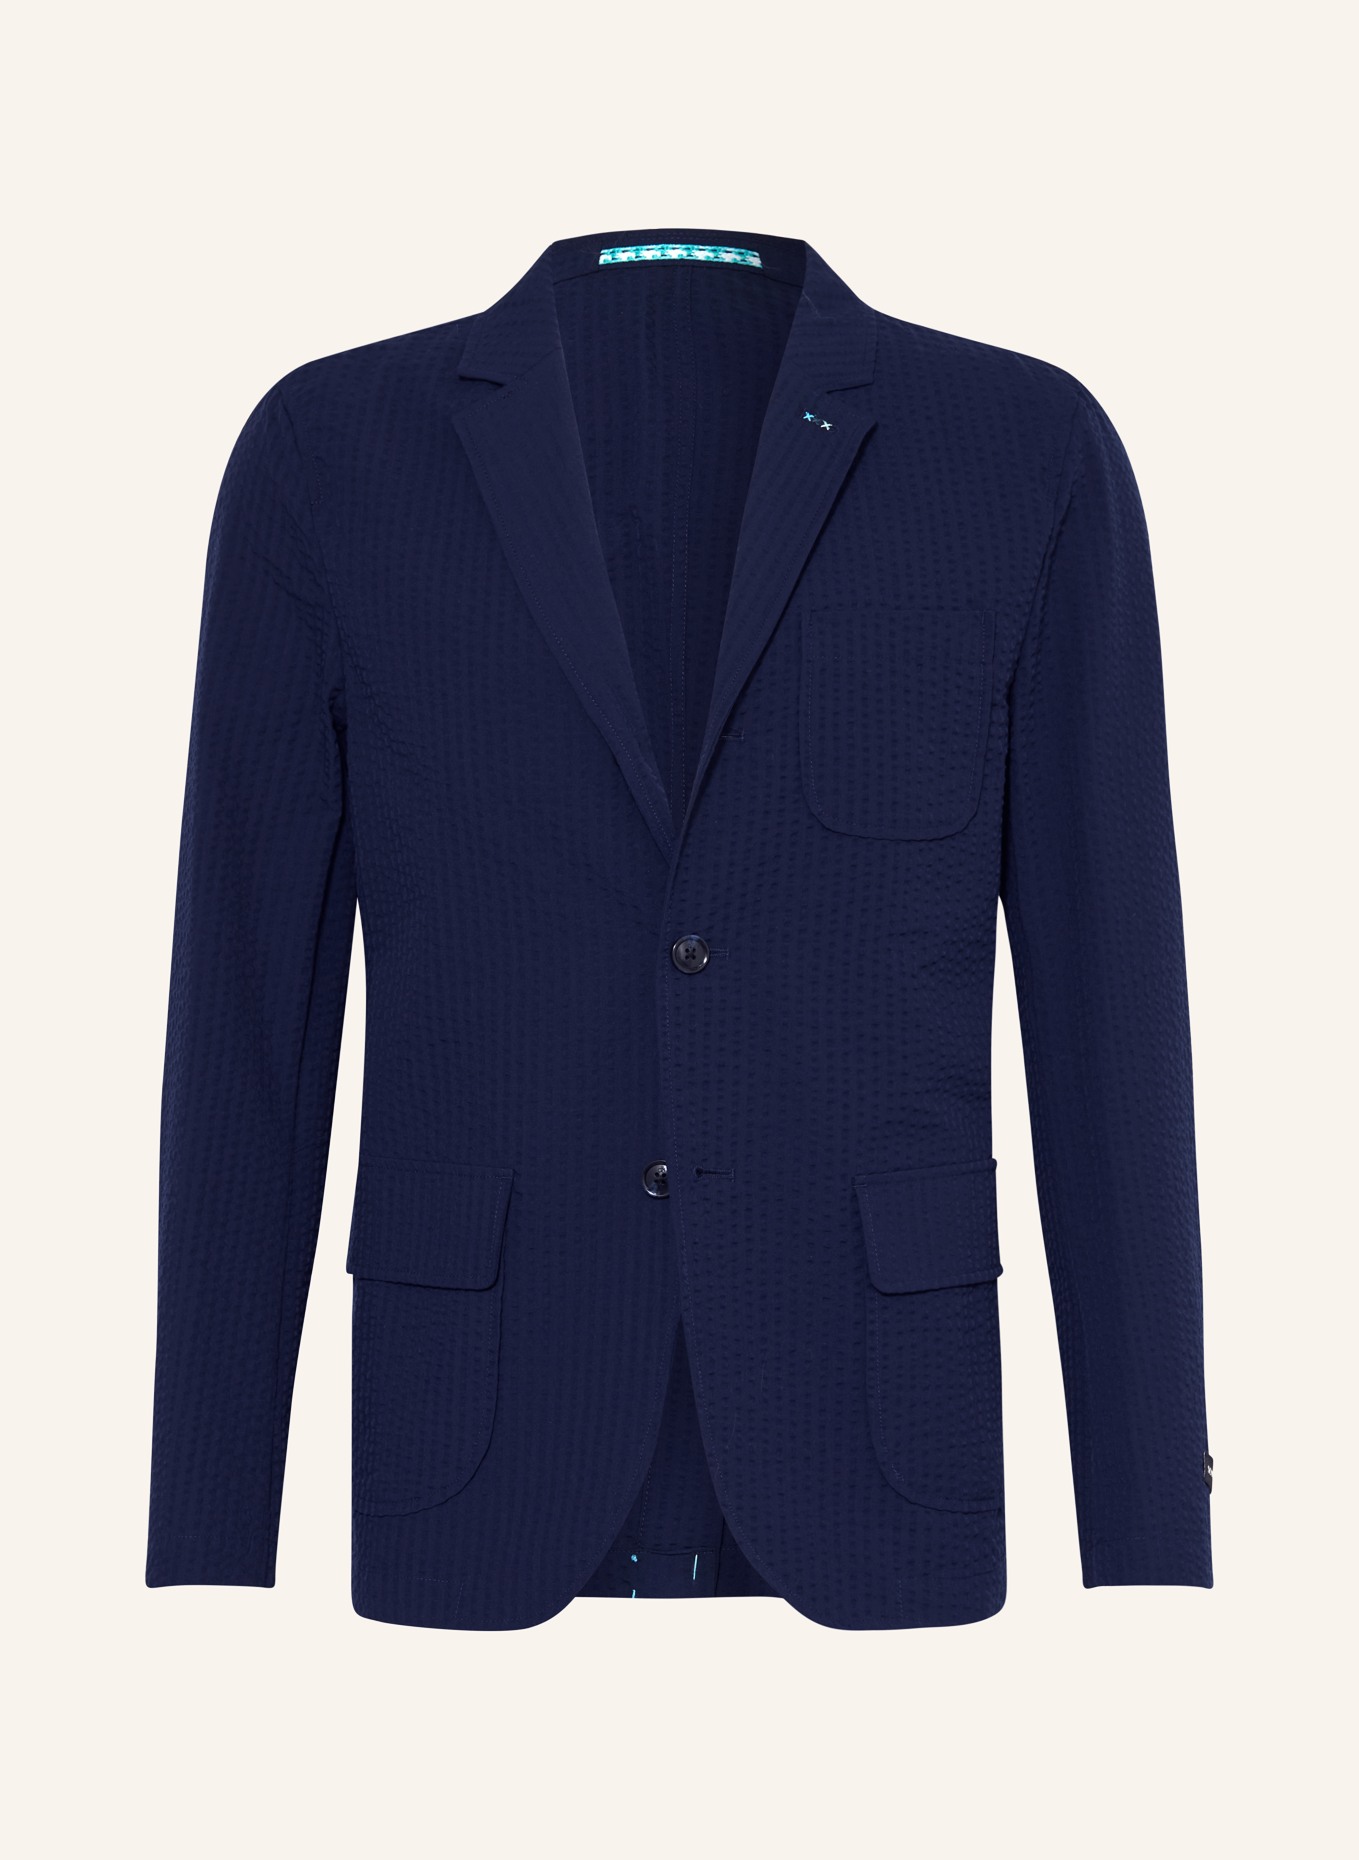 SCOTCH & SODA Suit jacket regular fit, Color: DARK BLUE (Image 1)